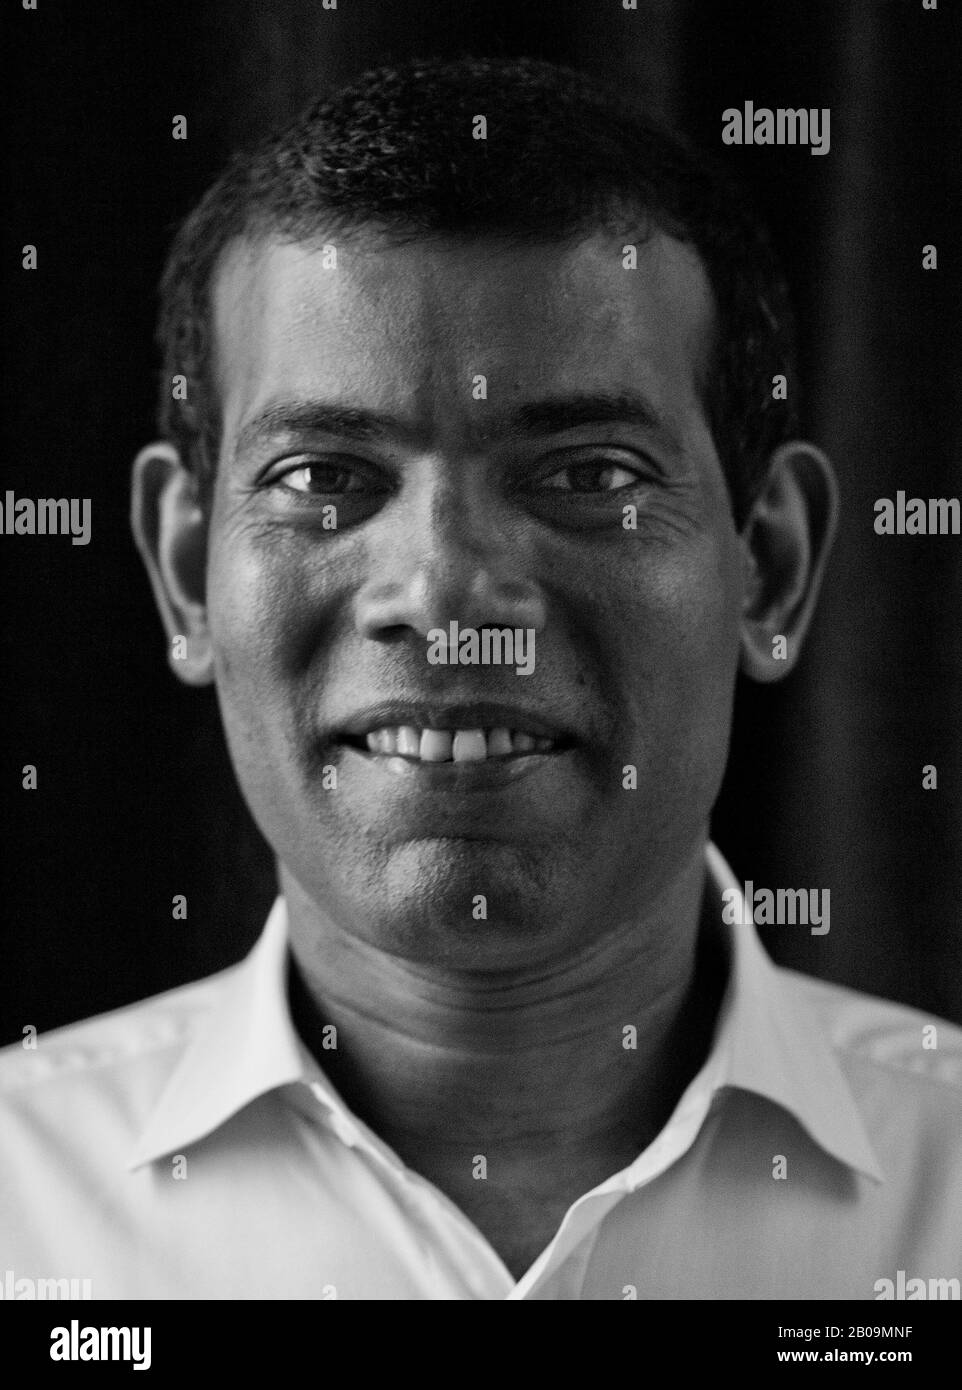 Mohamed Nasheed ist ein maledivischer Politiker, der von 2008 bis 2012 als vierter Präsident der Malediven diente. Er war der erste demokratisch gewählte Präsident der Malediven und einer der Gründer der maledivischen Demokratischen Partei. Stockfoto